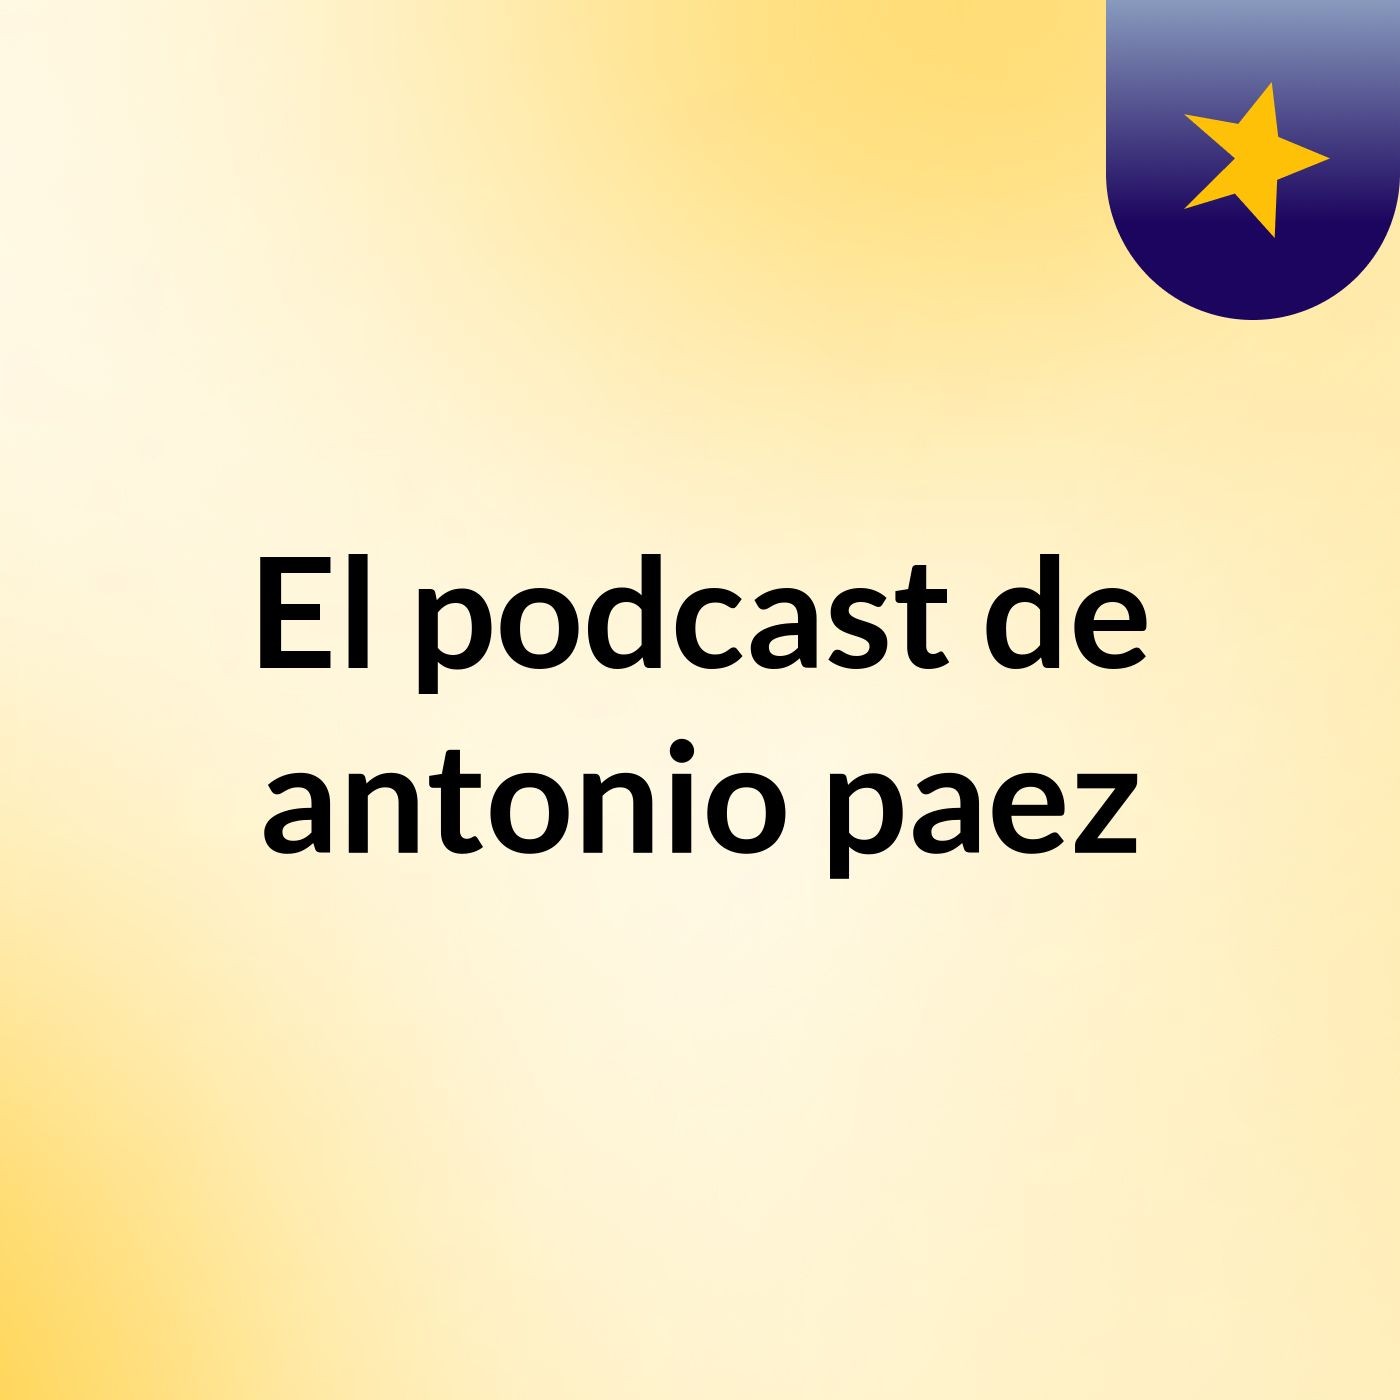 El podcast de antonio paez